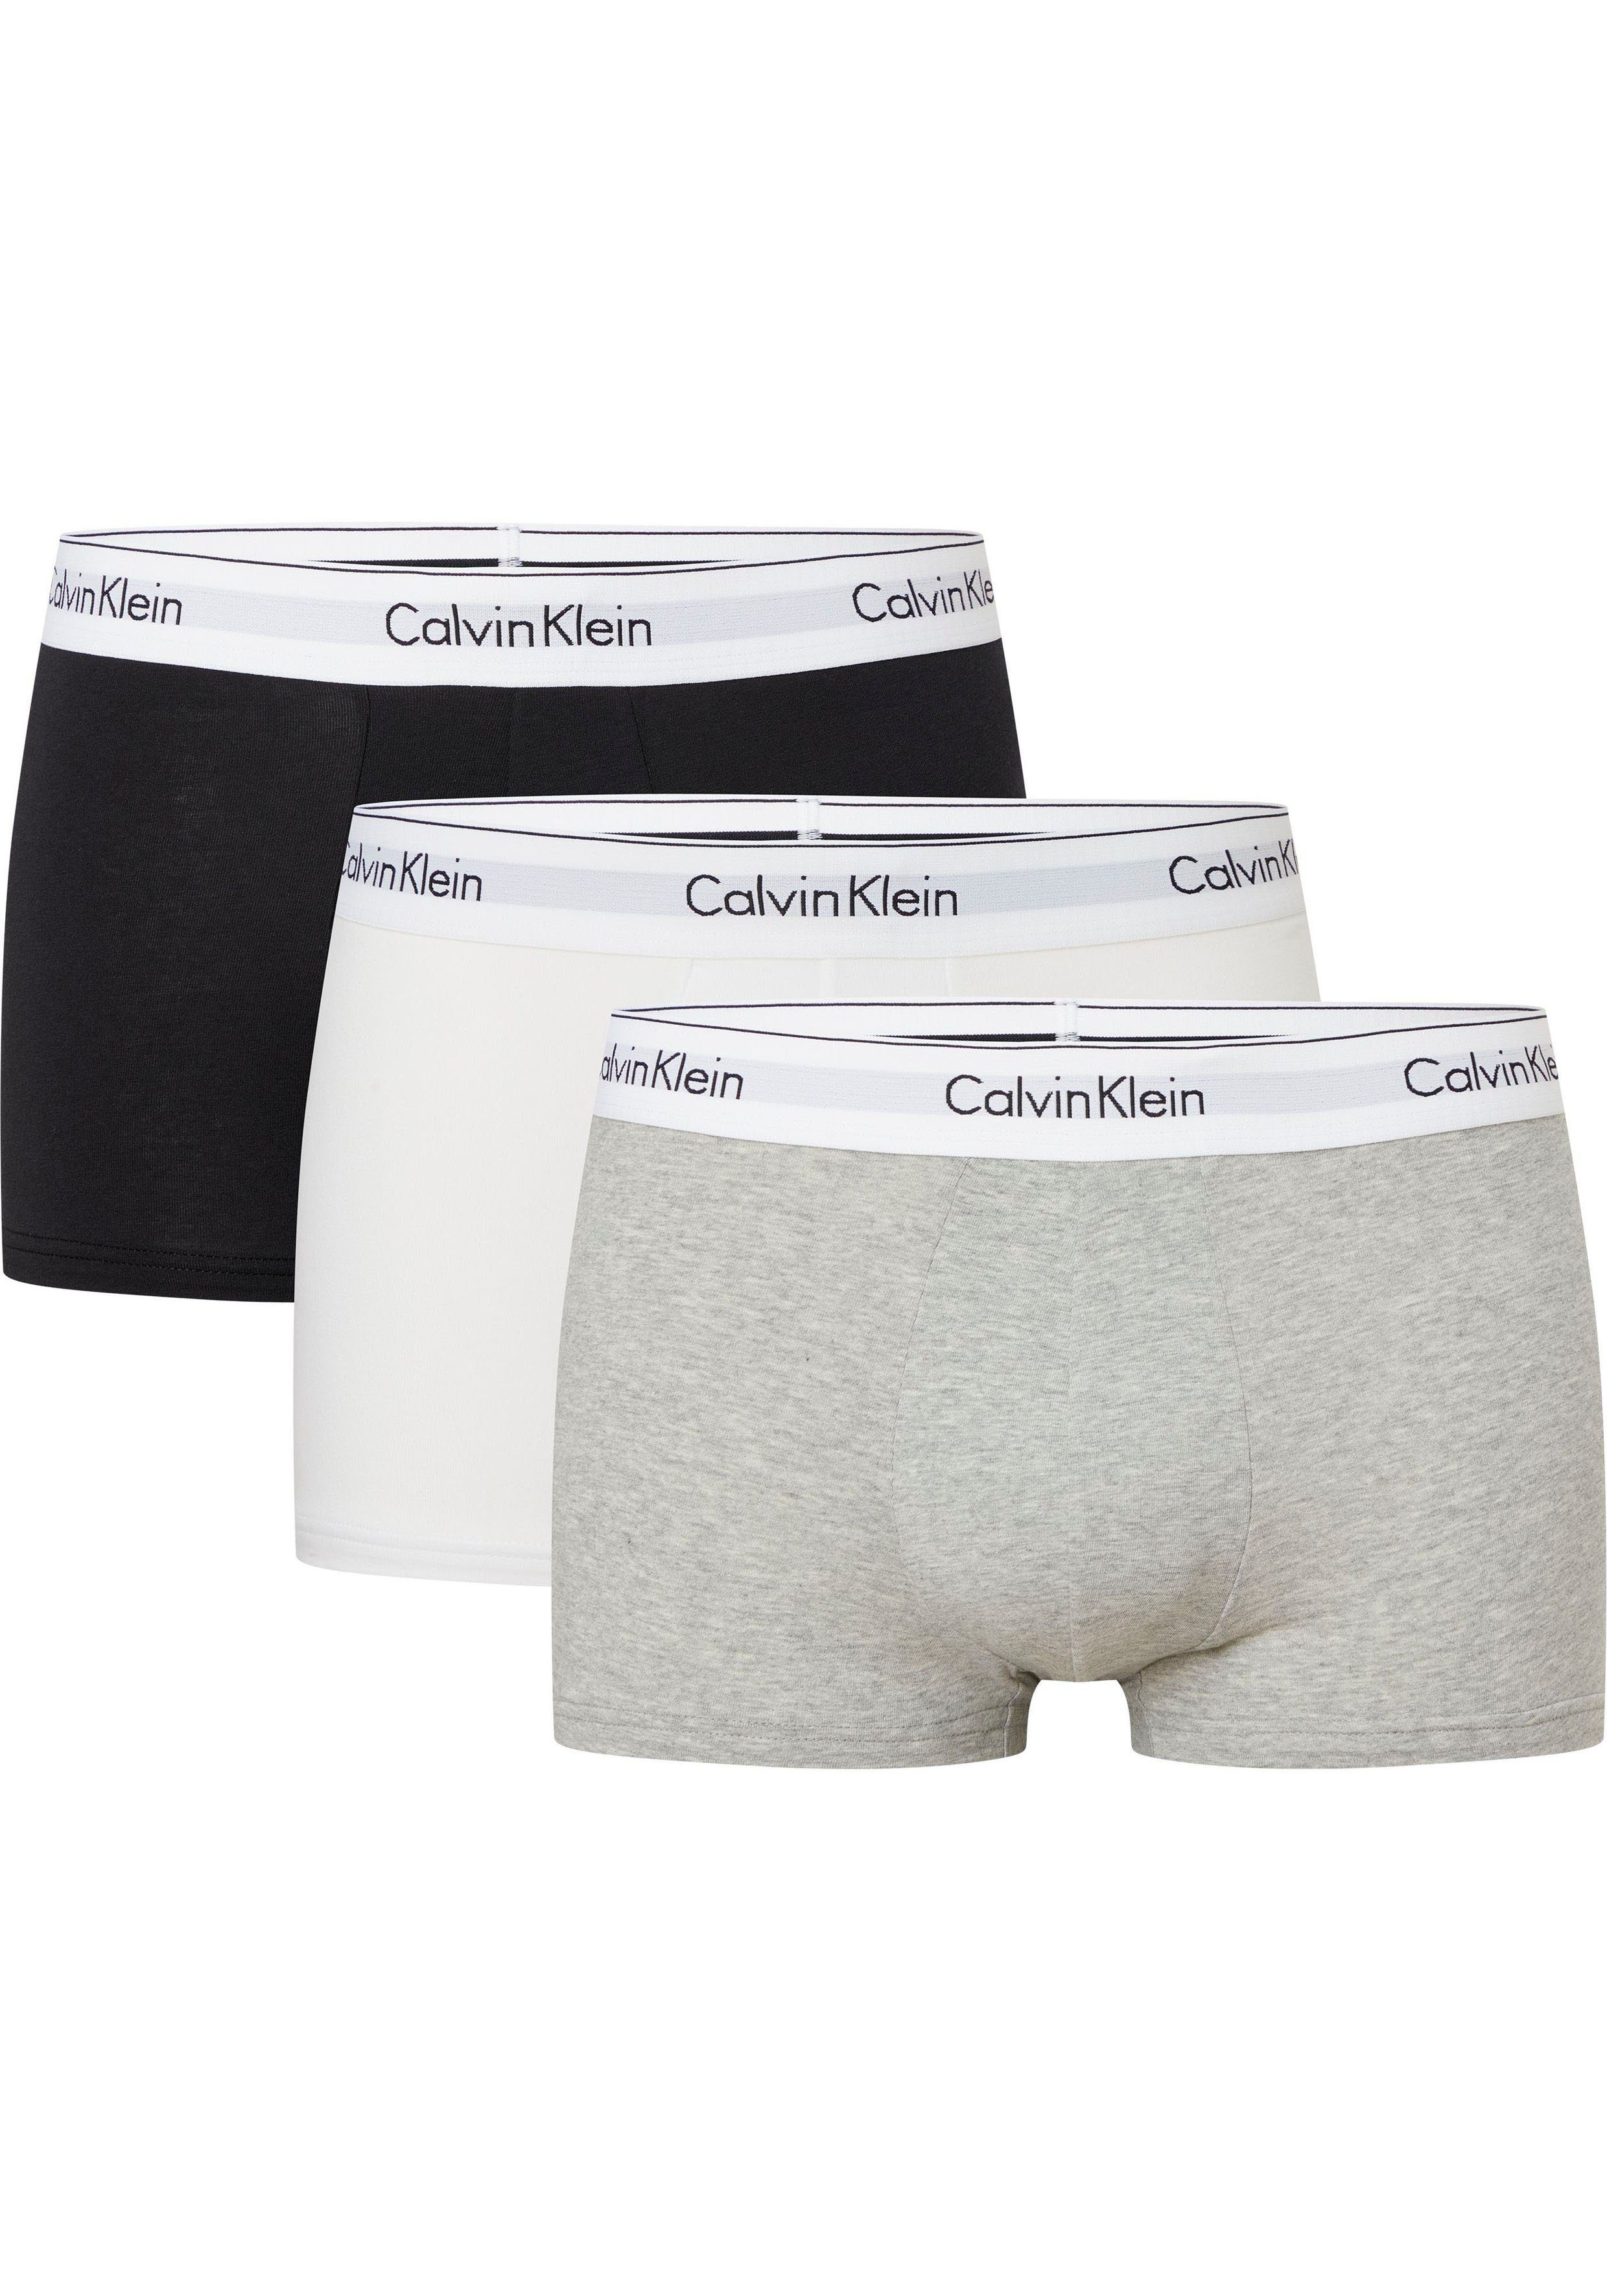 Calvin Klein Underwear Trunk (Packung, 3er-Pack) mit Calvin Klein Logobund, Plus Size WHITE, GREY HEATHER, BLACK